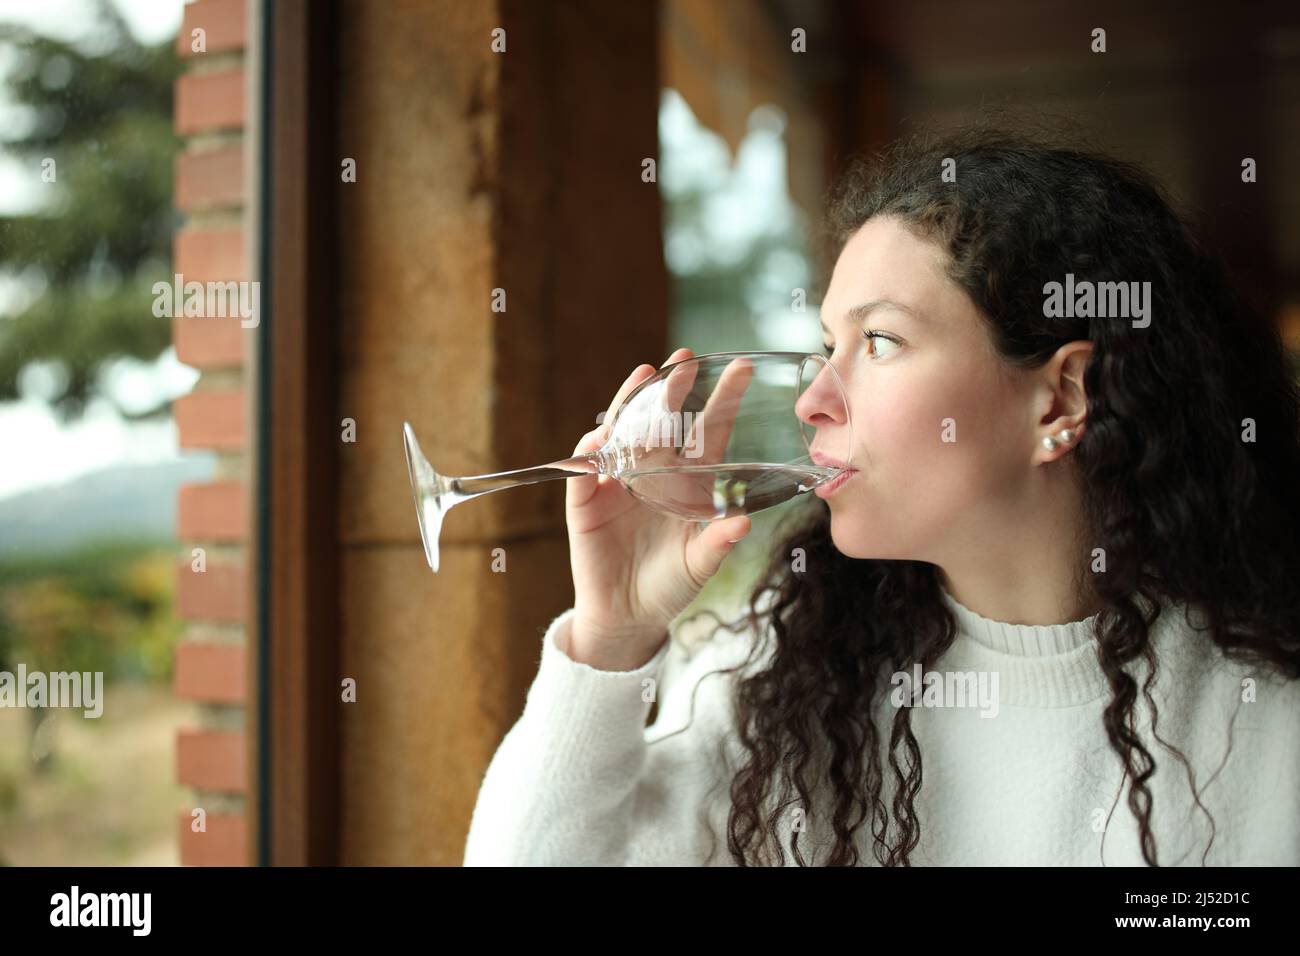 Donna distratta che beve acqua guardando attraverso una finestra in una casa Foto Stock